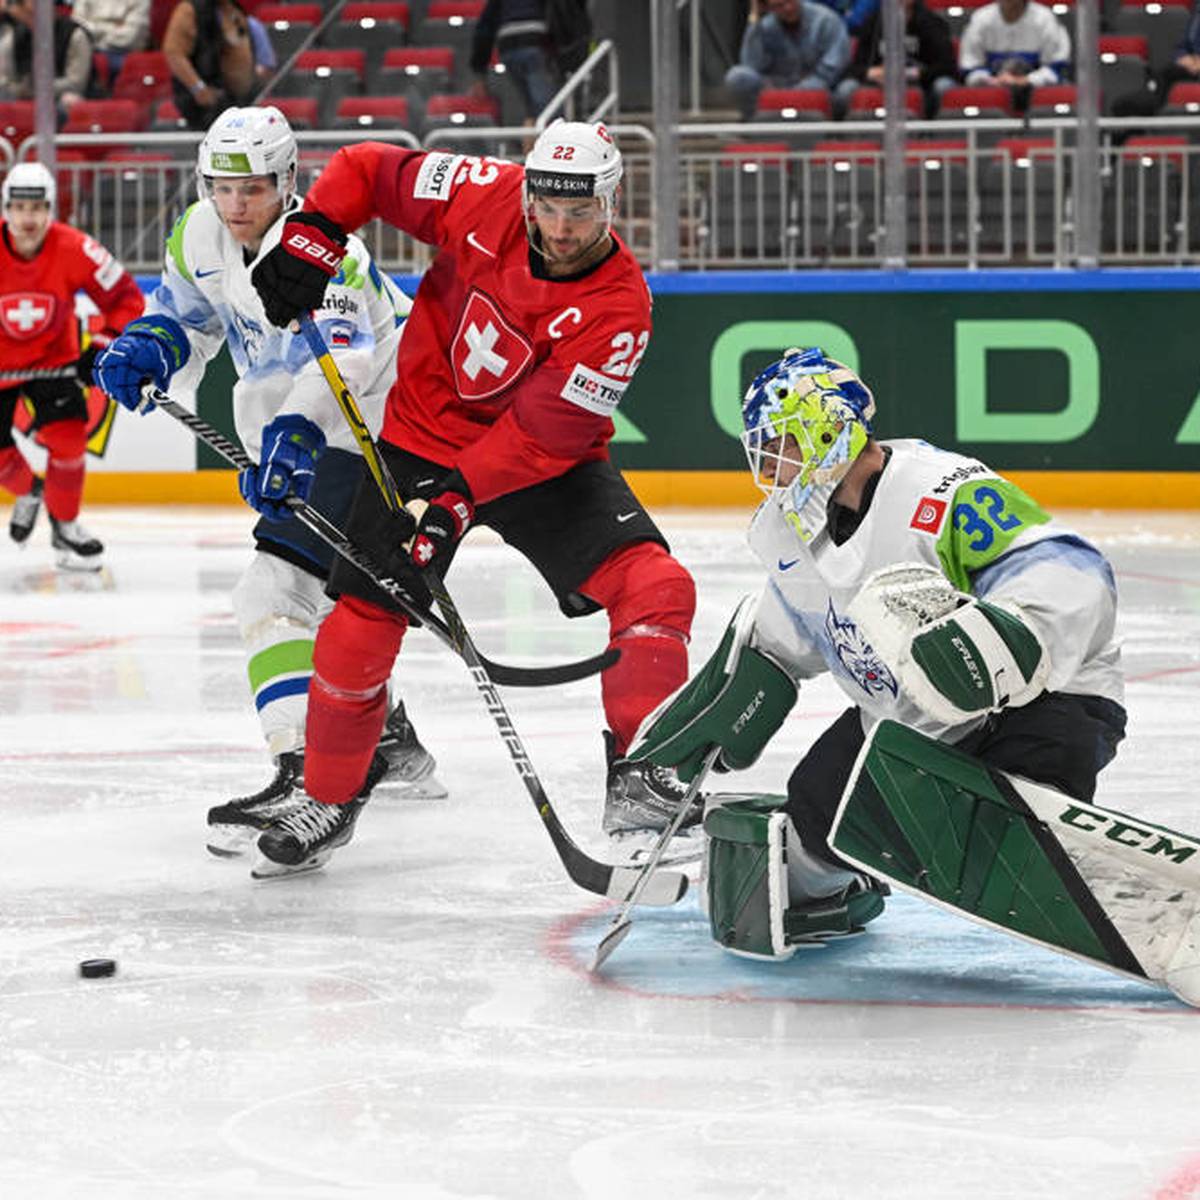 Eishockey-WM Schweiz startet mit Kantersieg